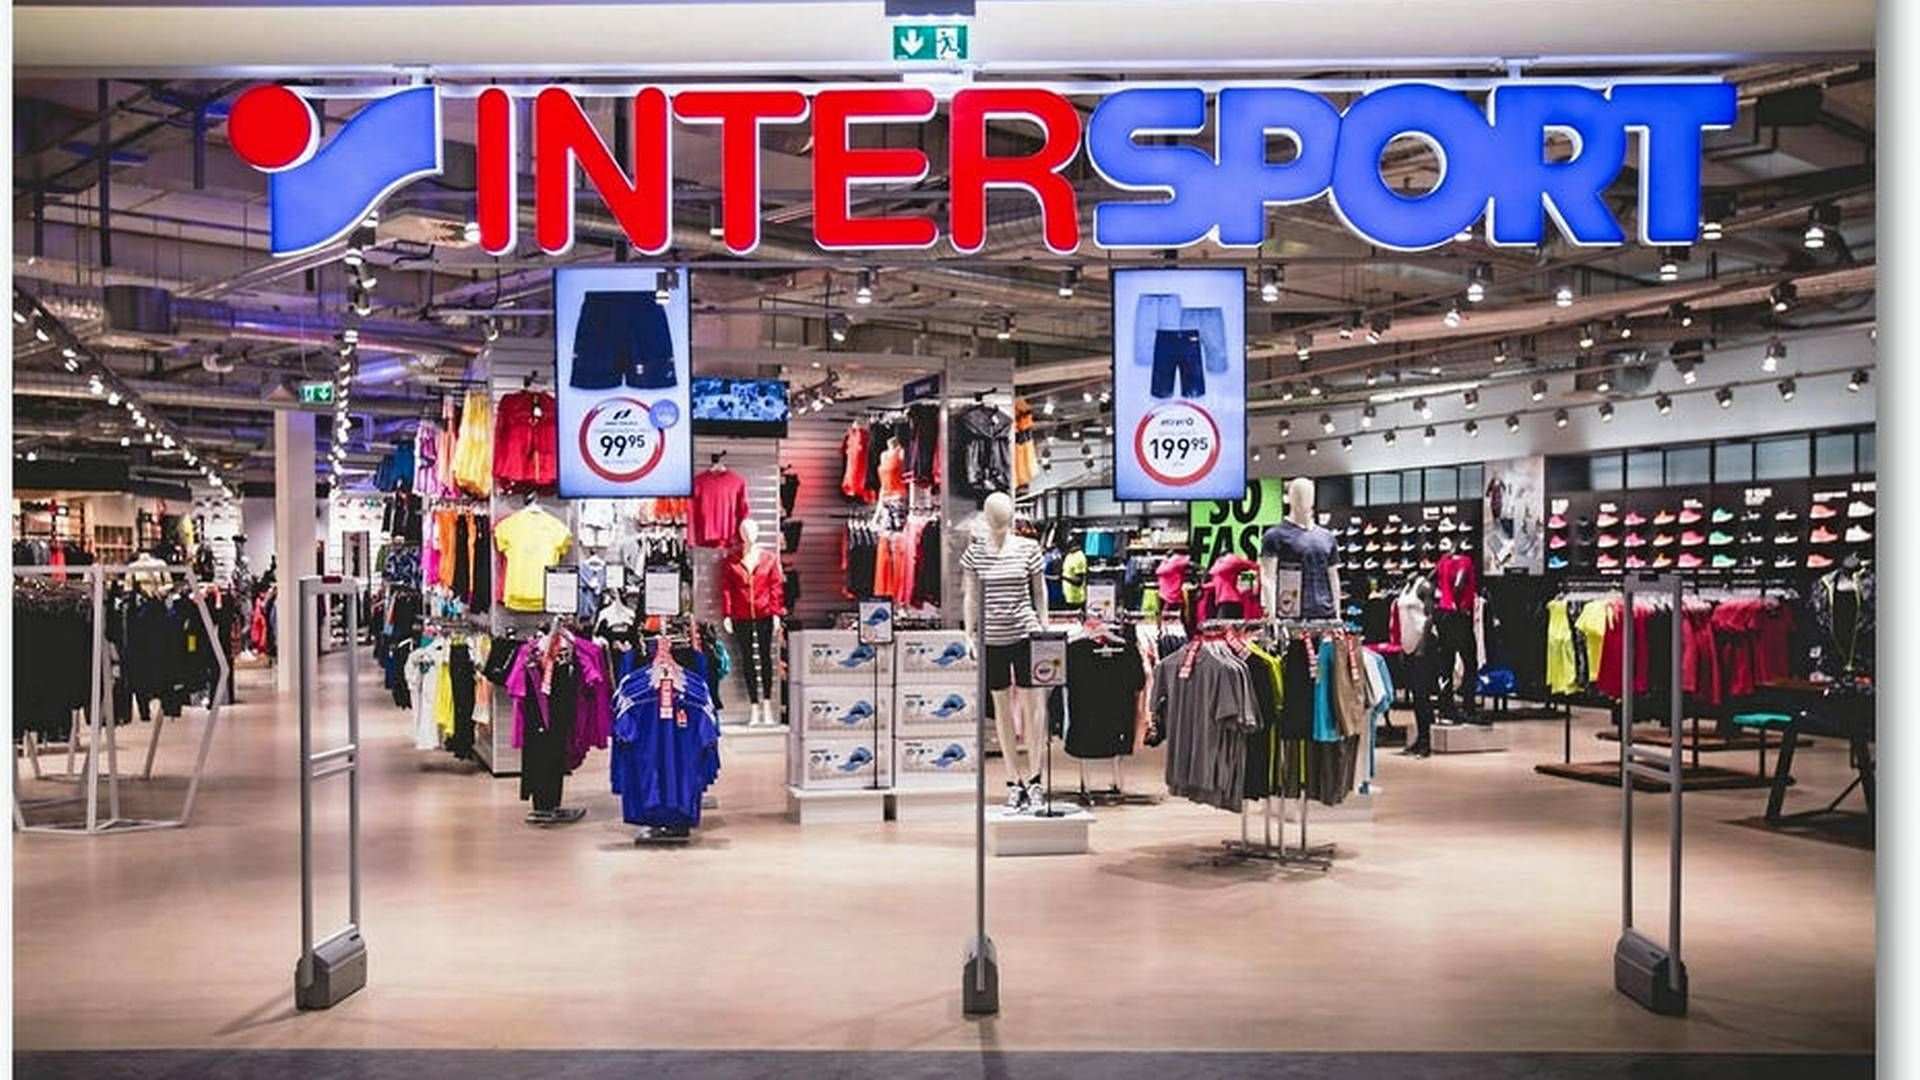 Intersport er en del af et internationalt brand, der har over 5.400 butikker i 42 lande. | Foto: Intersport/Pr